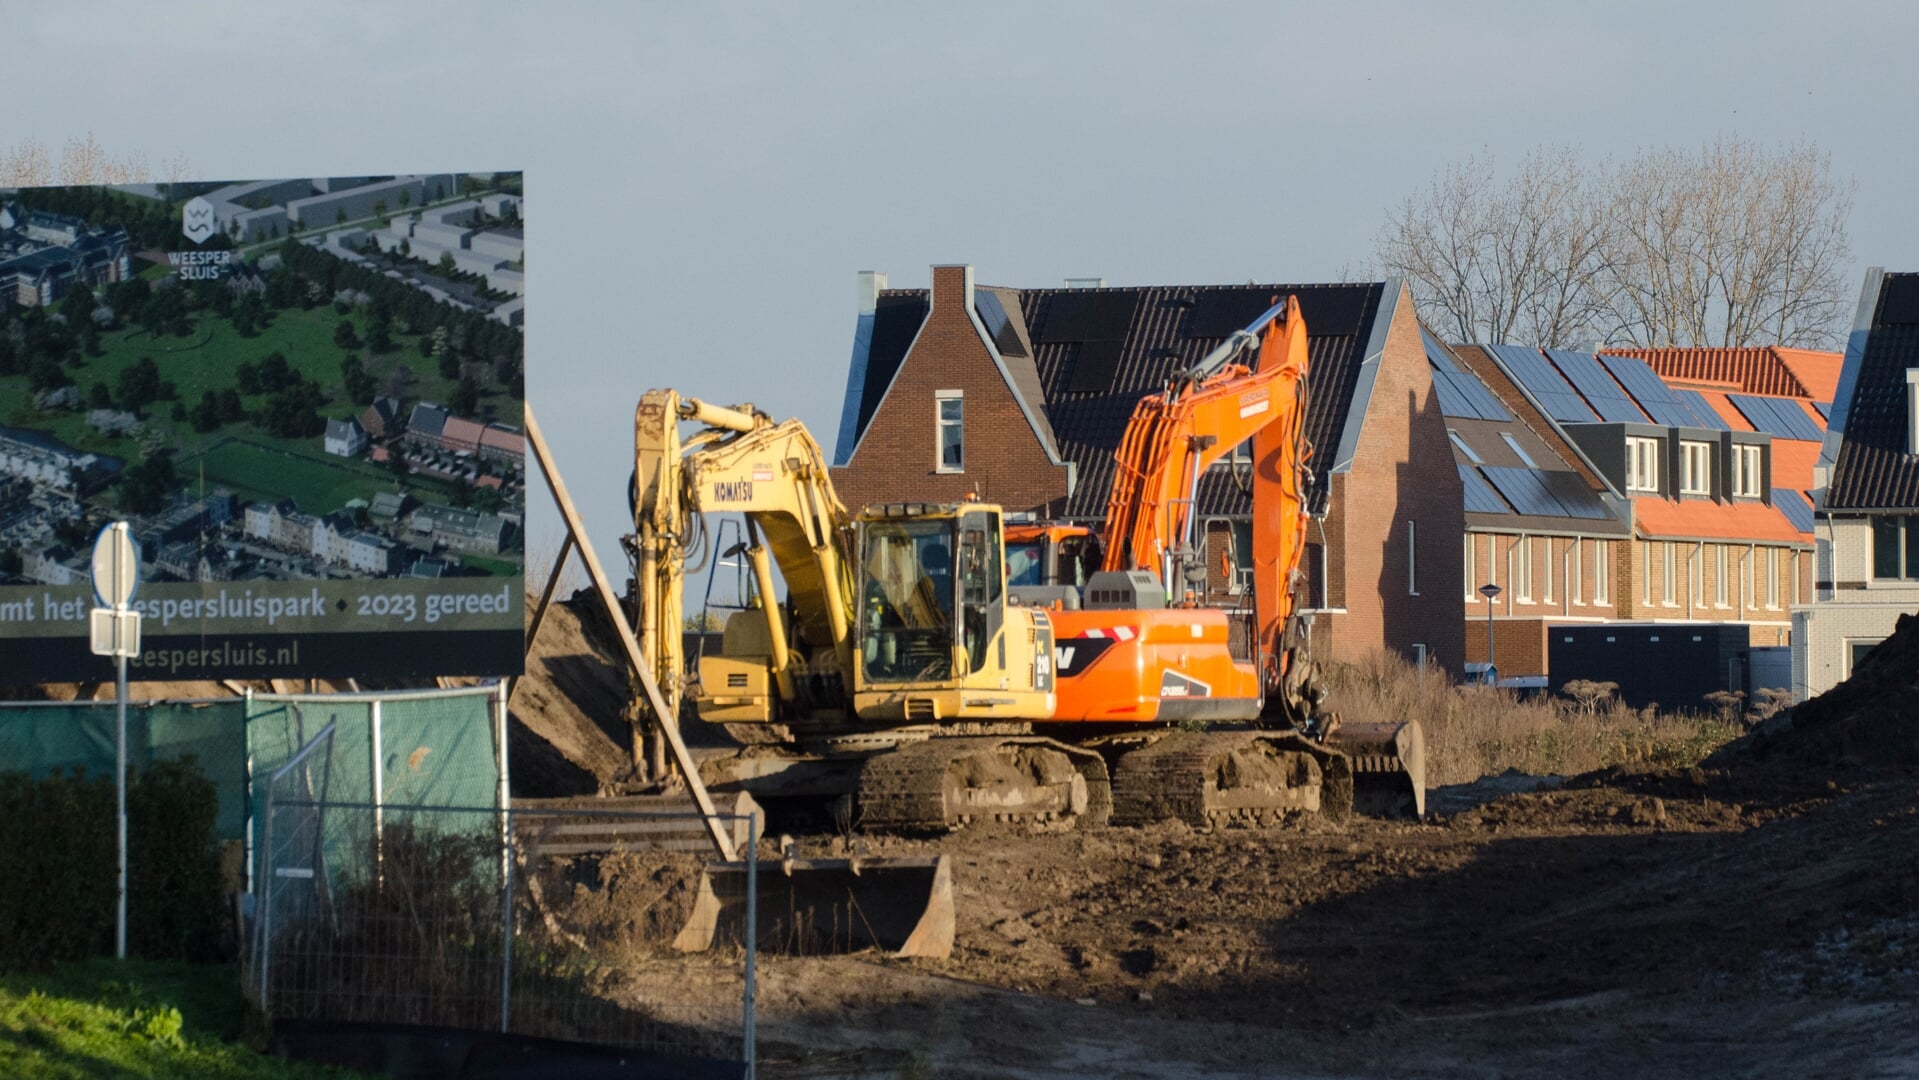 De bouw in Weesperskuis ligt vol op stoom.